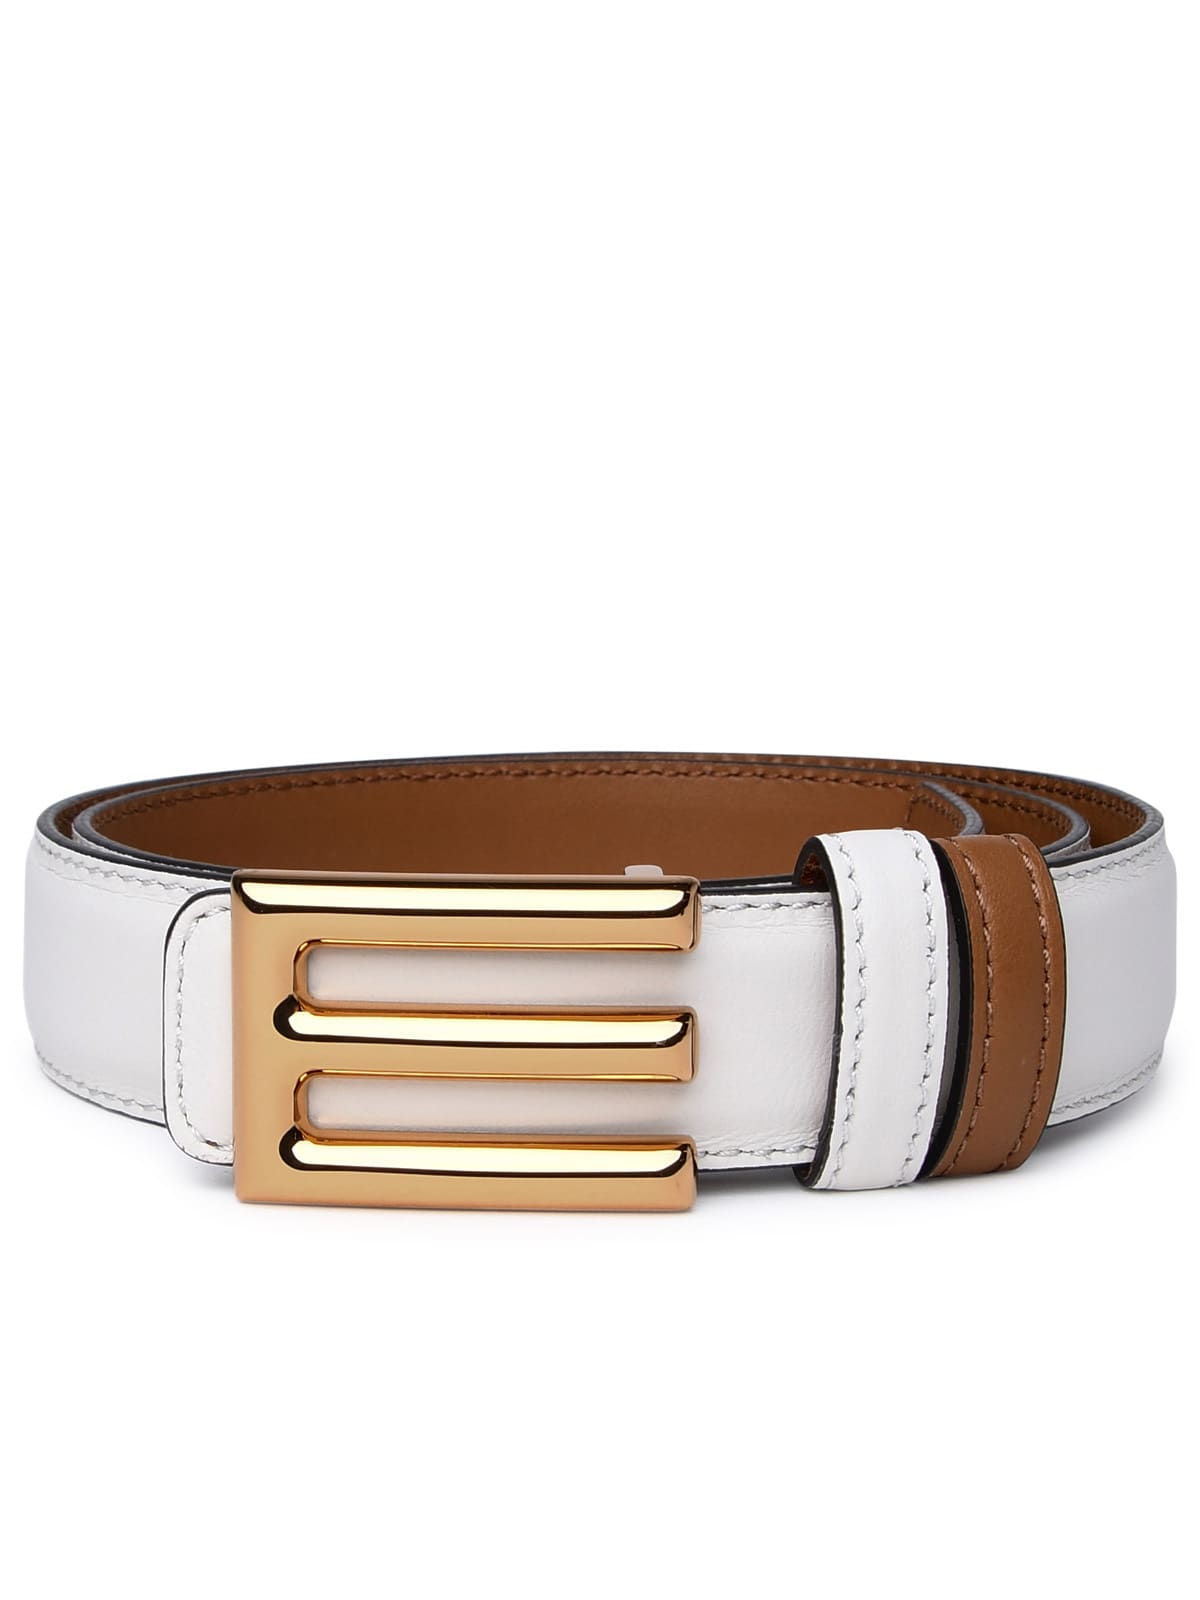 Ivory Leather Belt